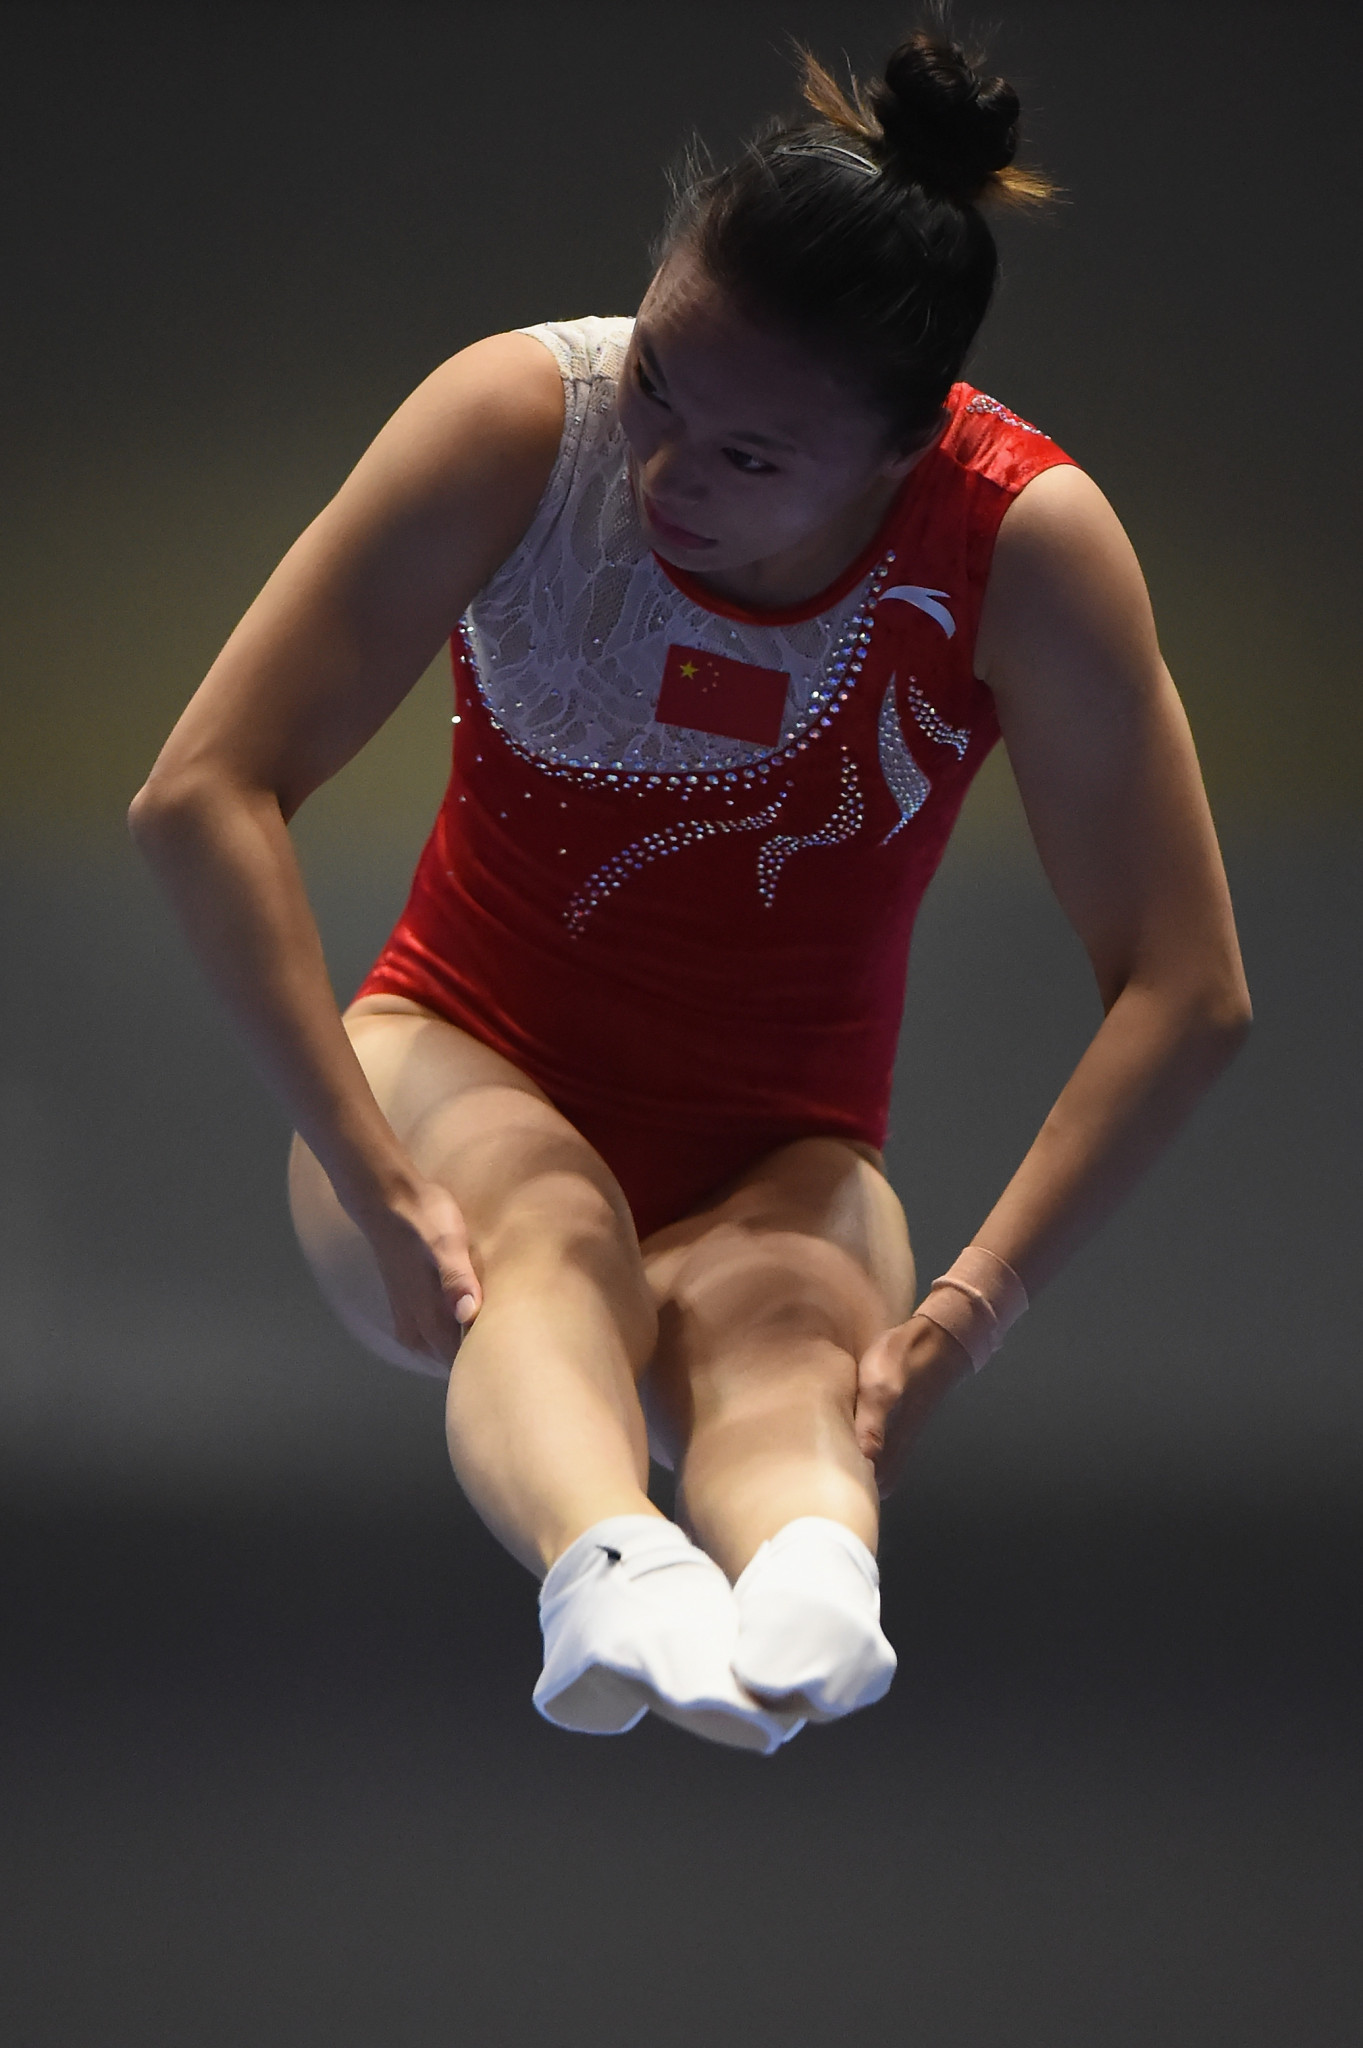 Zhu Xueying won the women's title ©Getty Images